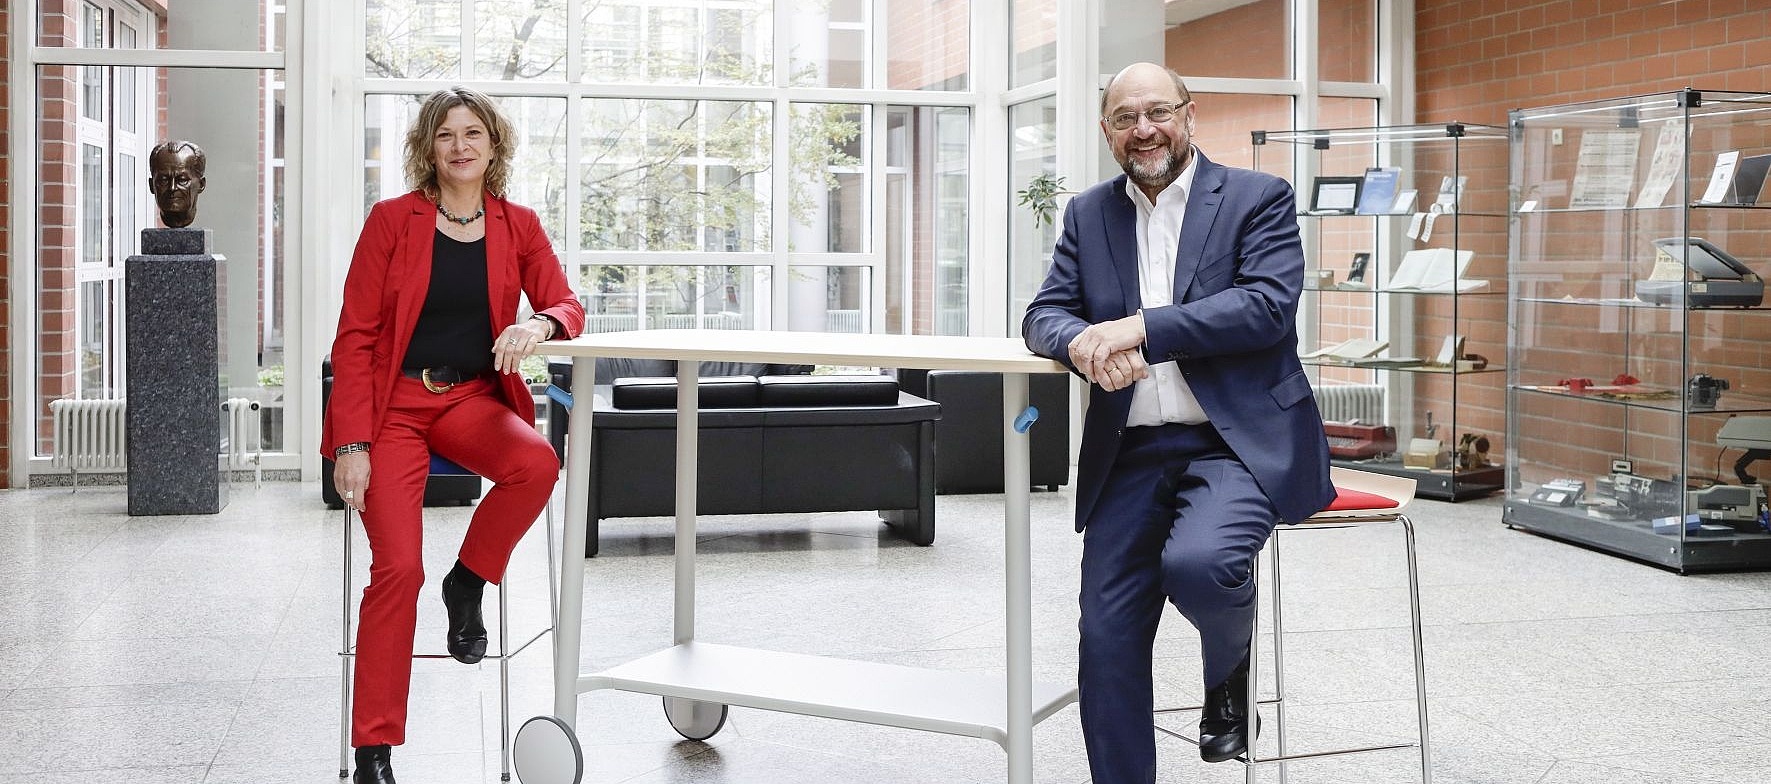 Masrtin Schulz und Sabine Fandrych sitzen im Foyer der Friedrich-Ebert-Stiftung in Bonn